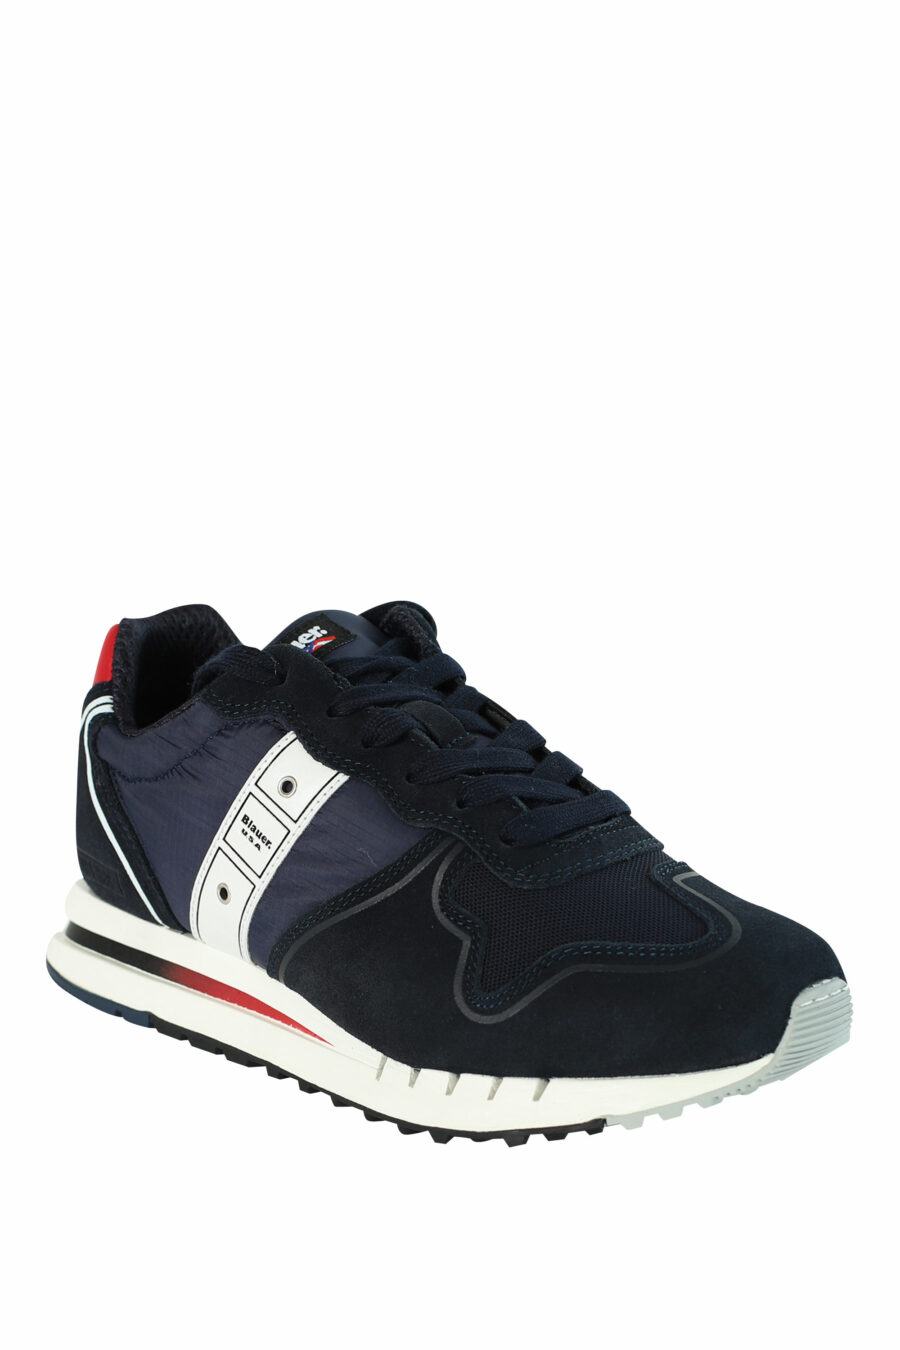 Zapatillas "QUARTZ" azules con detalles rojos - 8058156499454 2